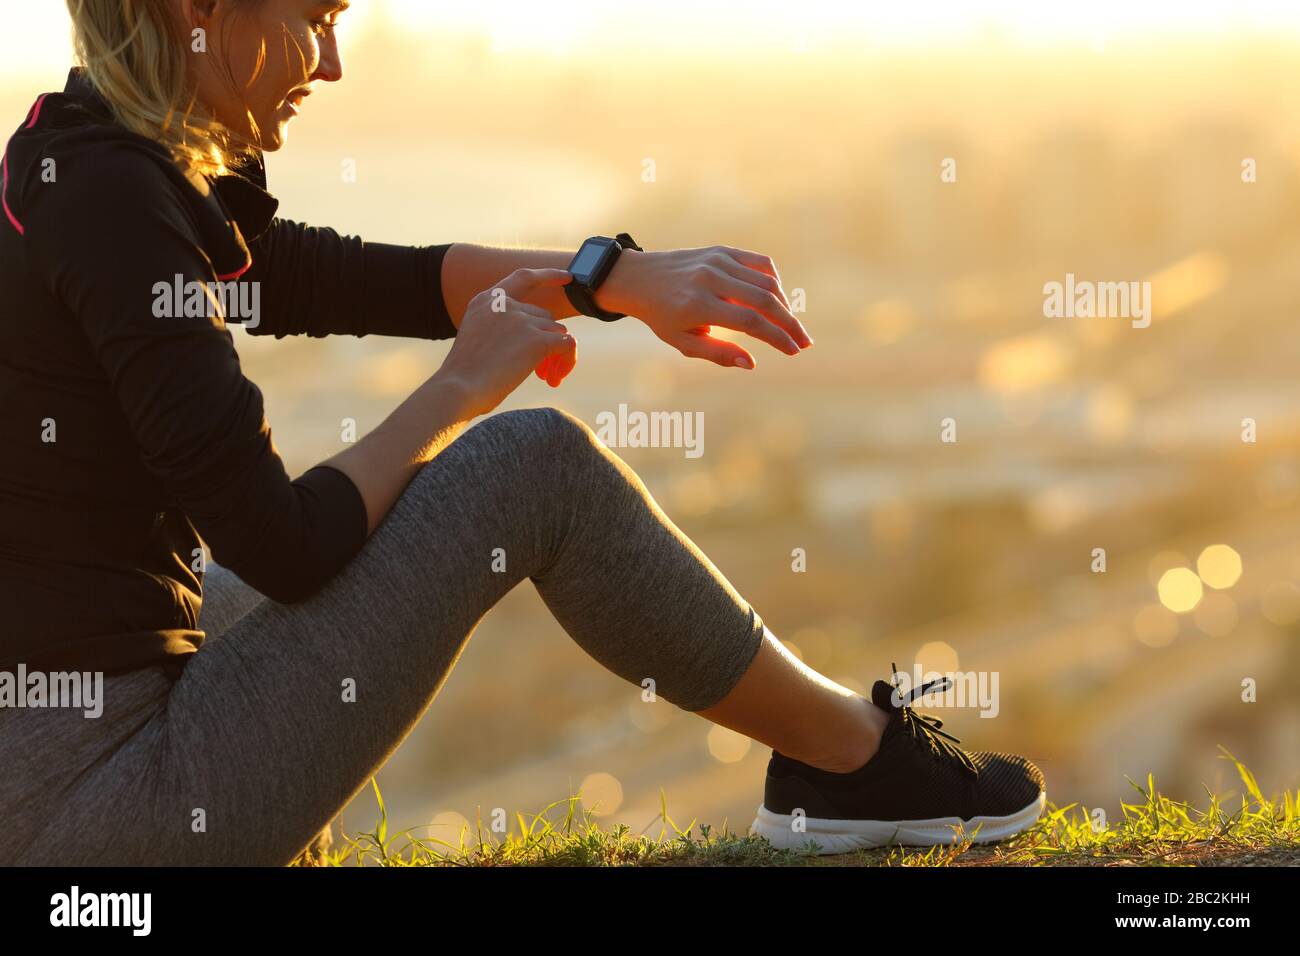 Corredor sentado en el suelo comprobando smartwatch después de correr al atardecer Foto de stock